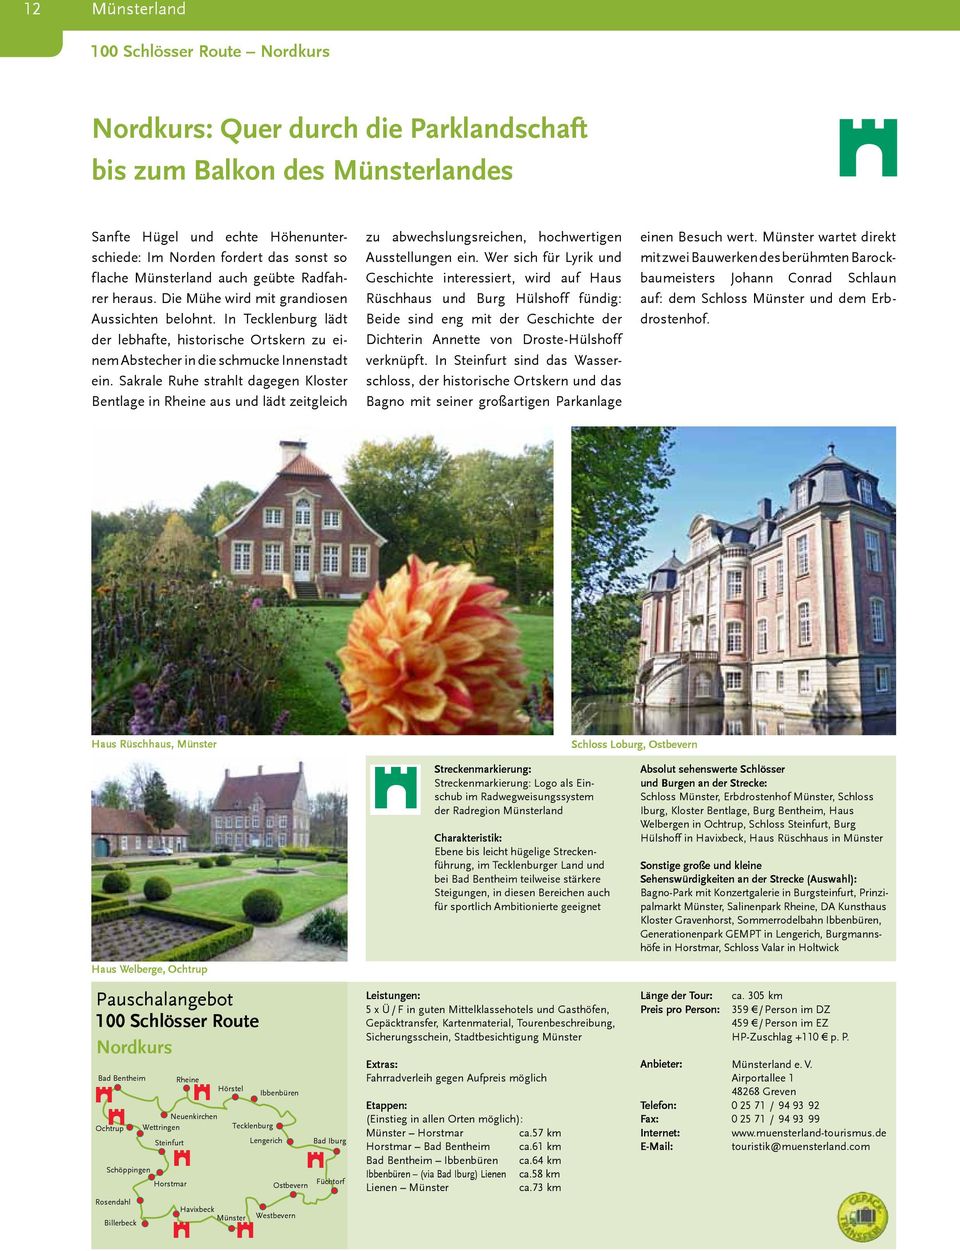 Sakrale Ruhe strahlt dagegen Kloster Bentlage in Rheine aus und lädt zeitgleich zu abwechslungsreichen, hochwertigen Ausstellungen ein.